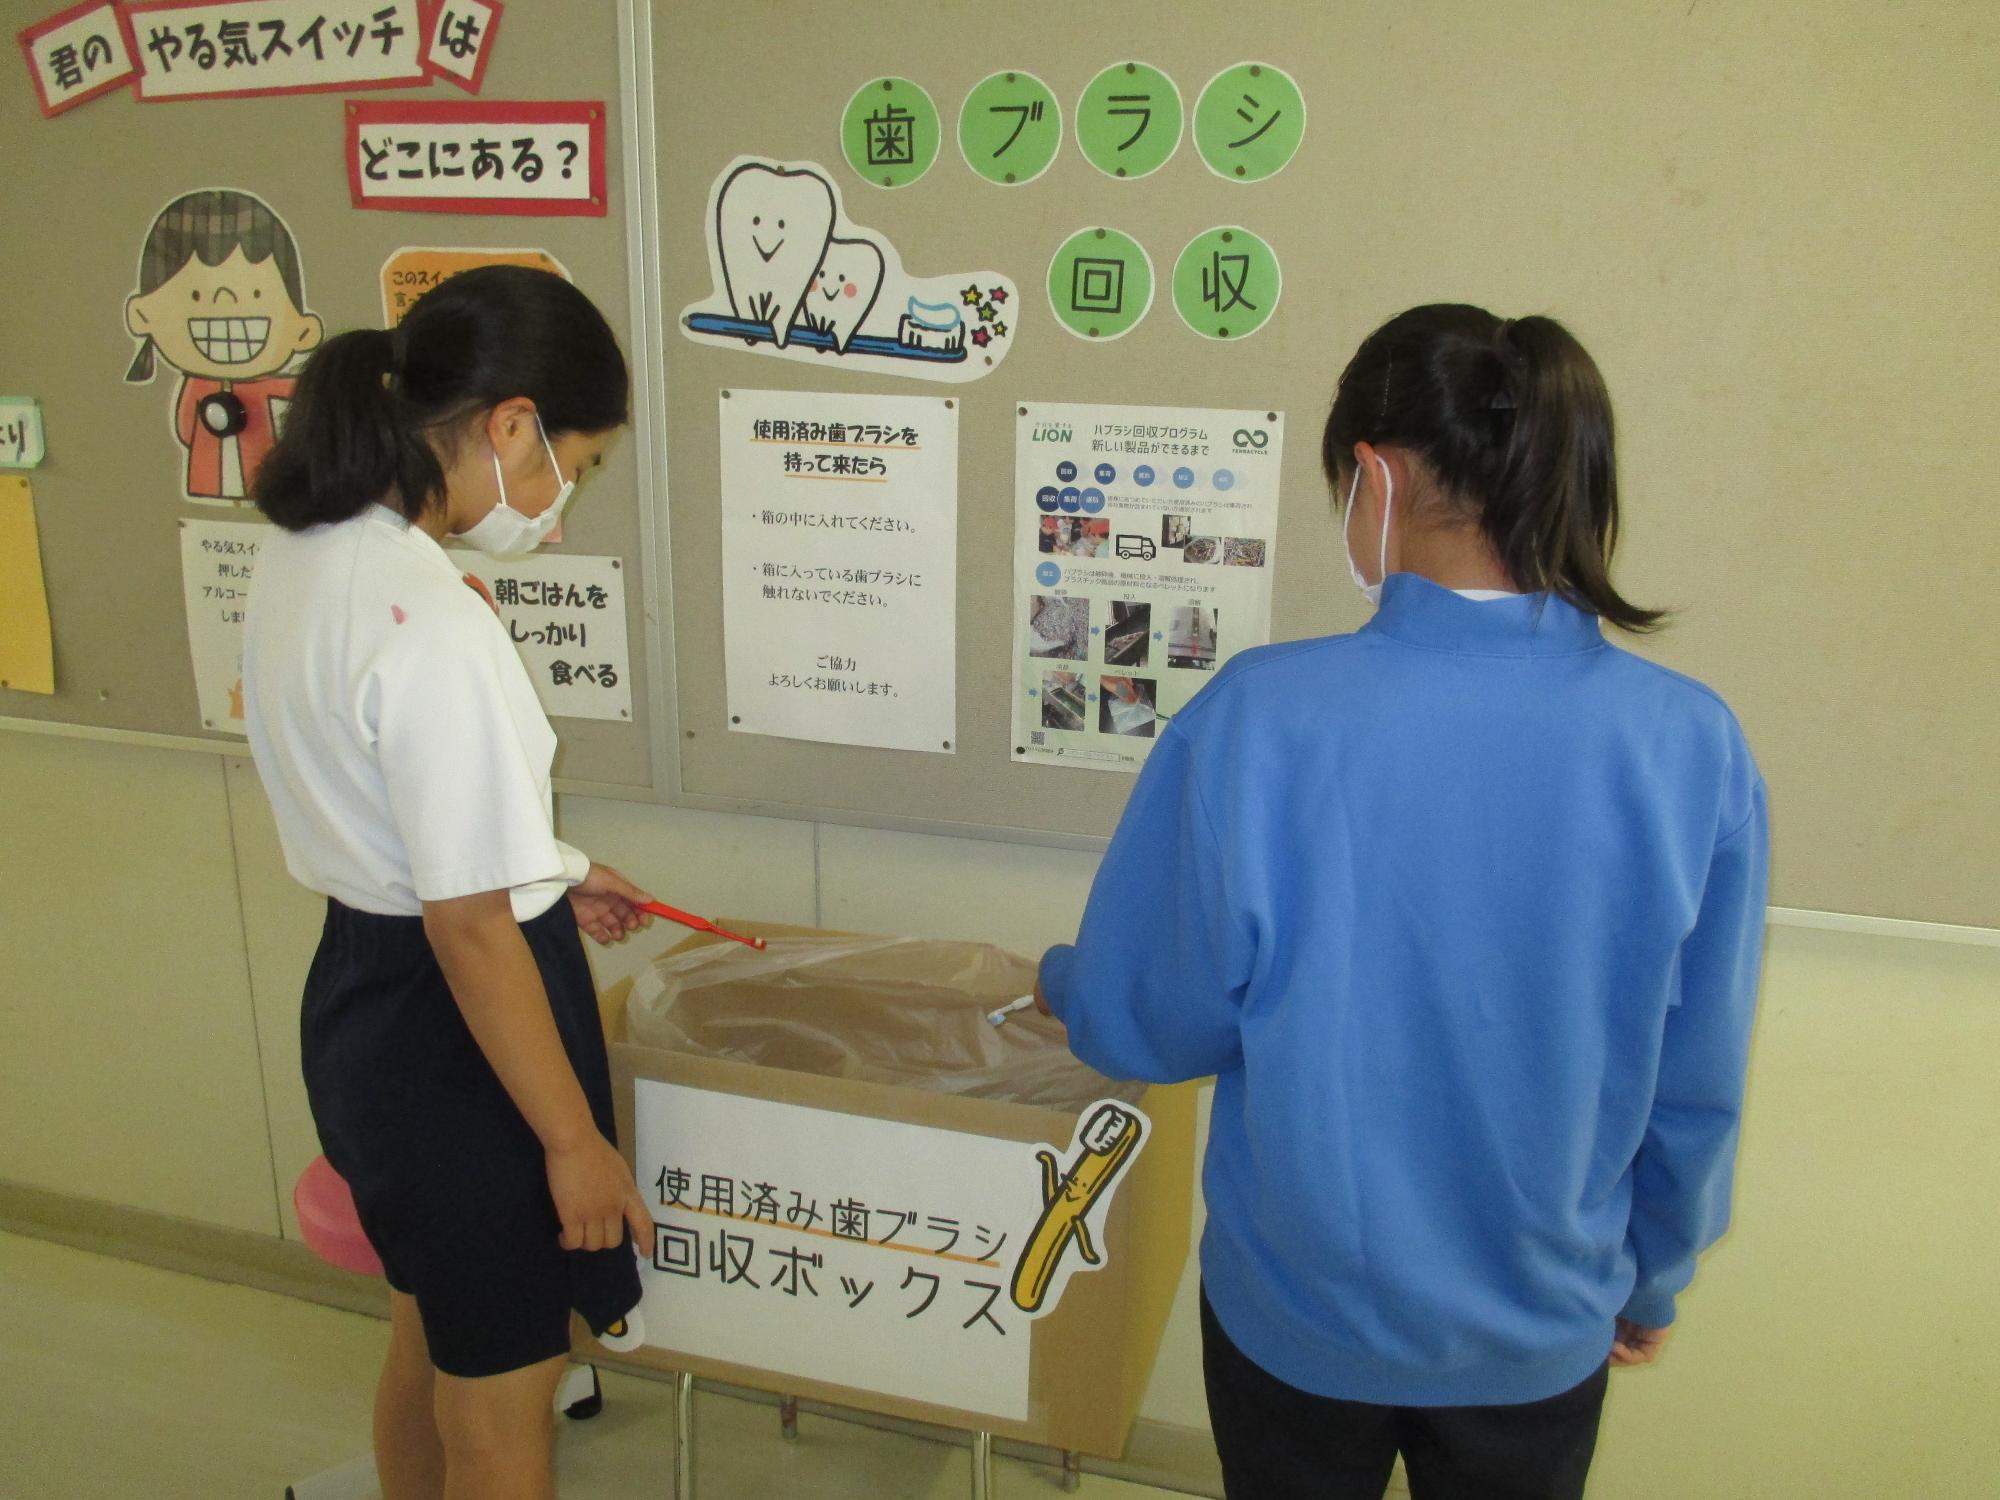 回収ボックスに使用済み歯ブラシを寄付する2人の女子中学生